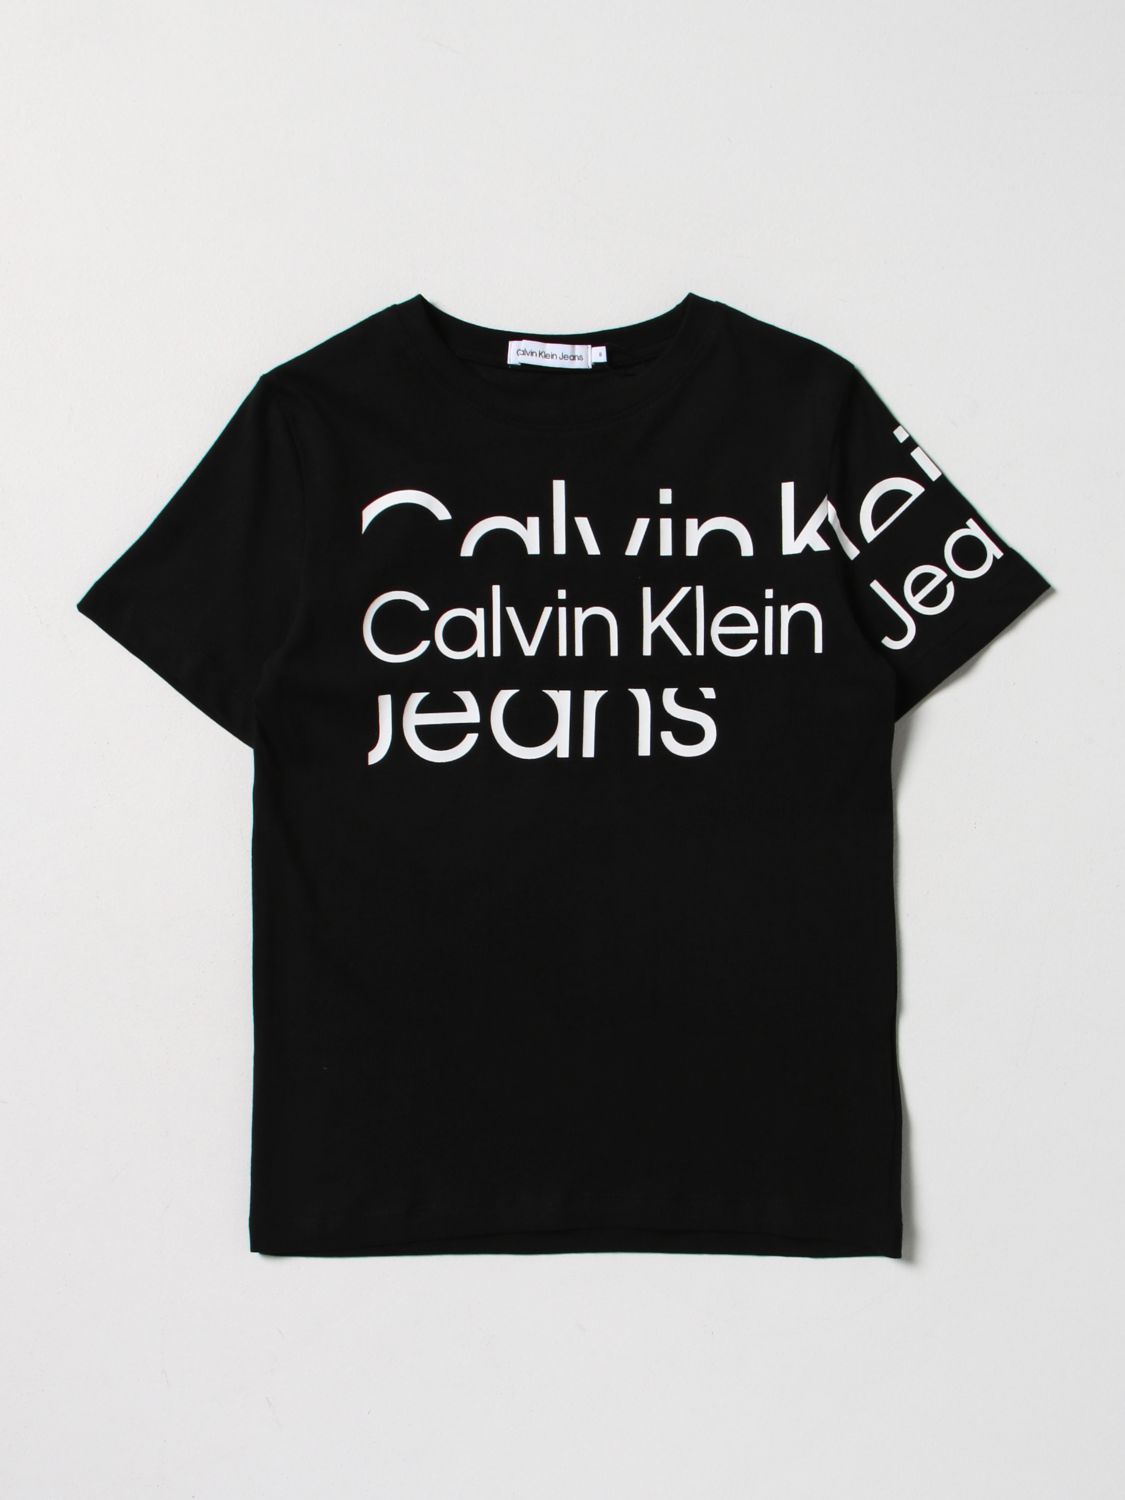 CALVIN KLEIN T-SHIRT CALVIN KLEIN KIDS COLOR BLACK,E21909002